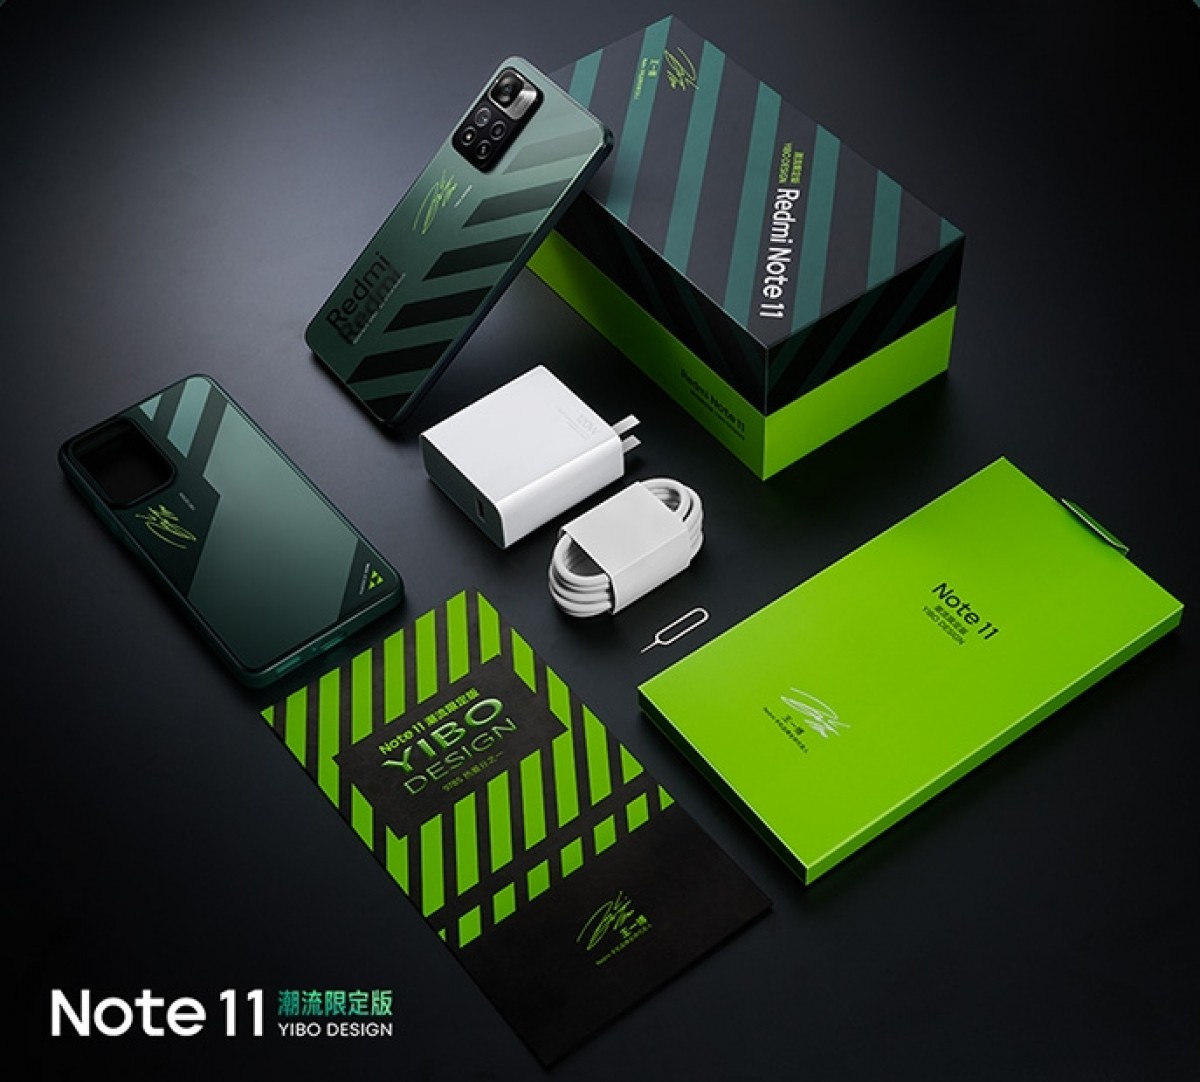 Le Redmi Note 11 Pro+ reçoit une version spéciale du design Yibo pour 420 $